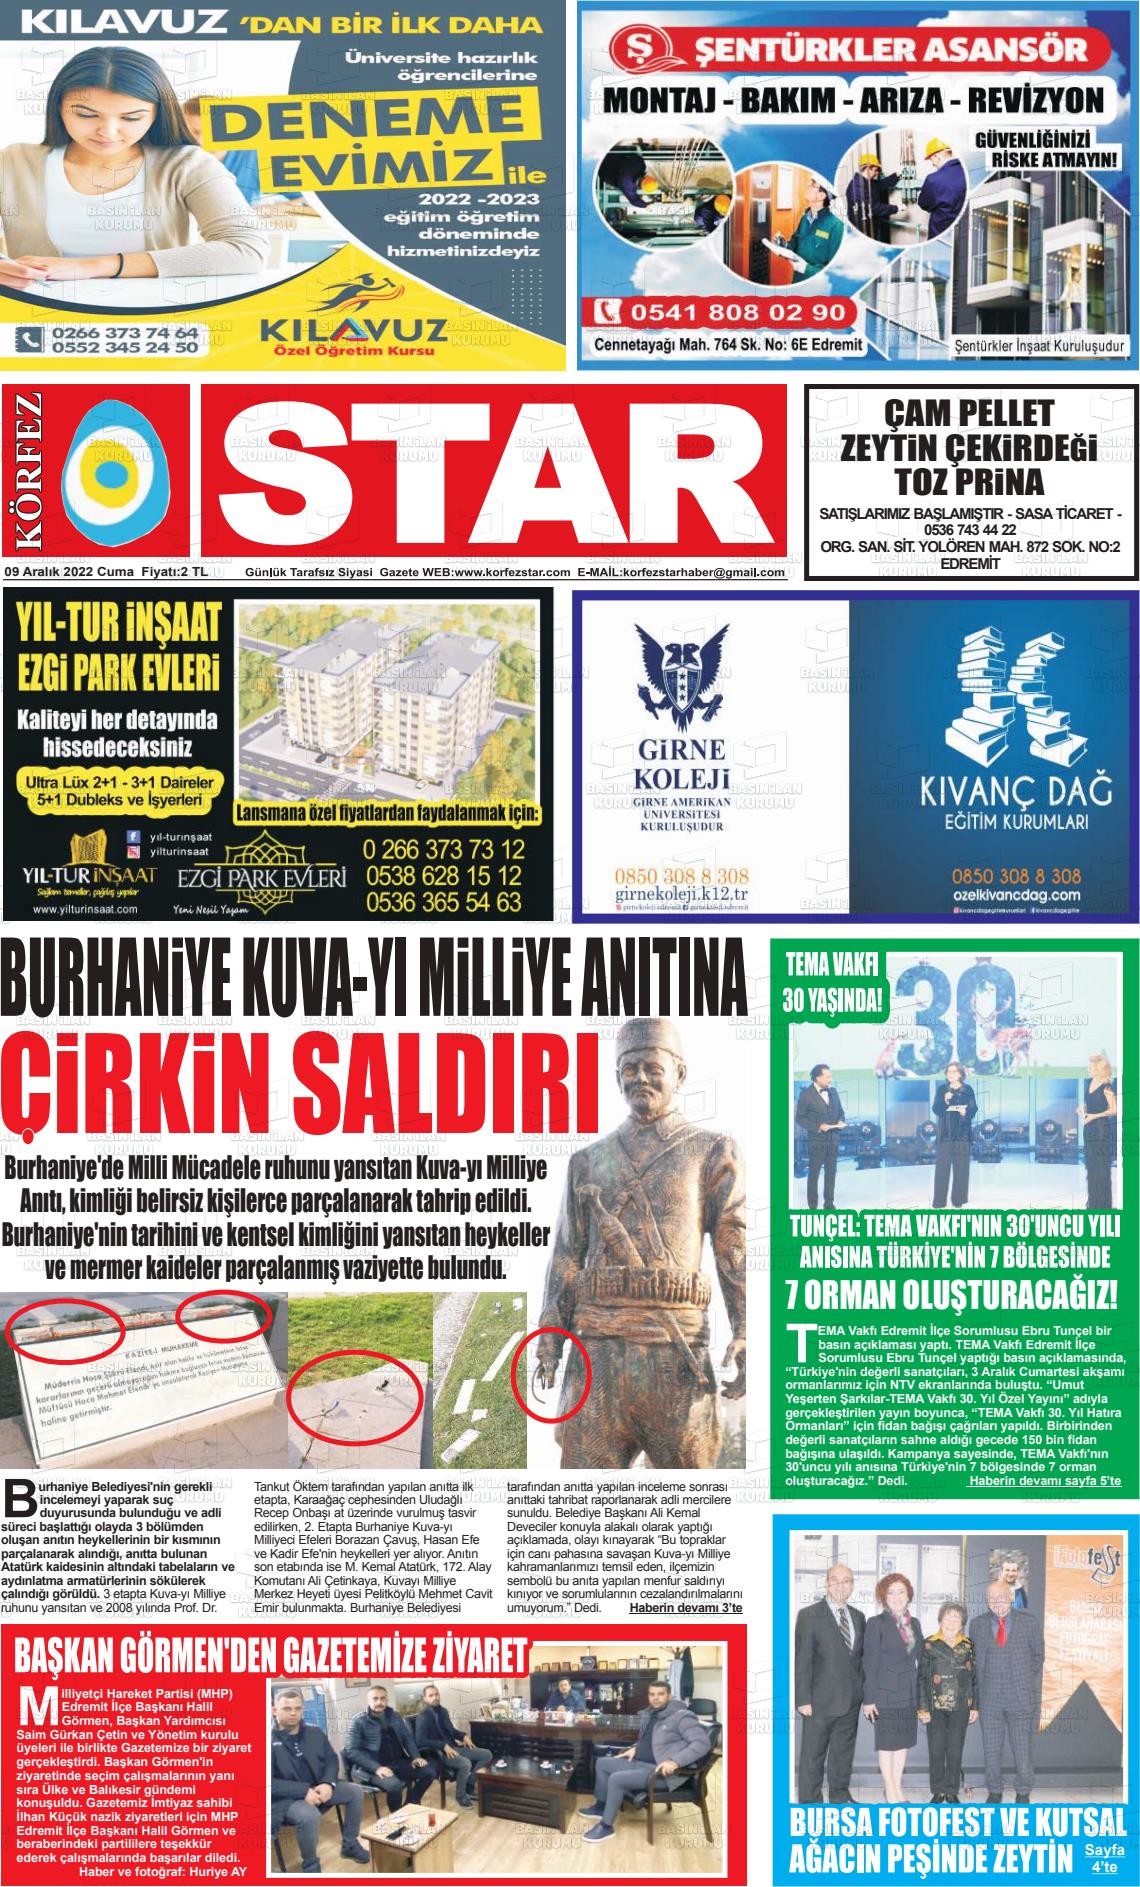 09 Aralık 2022 Körfez Star Gazete Manşeti